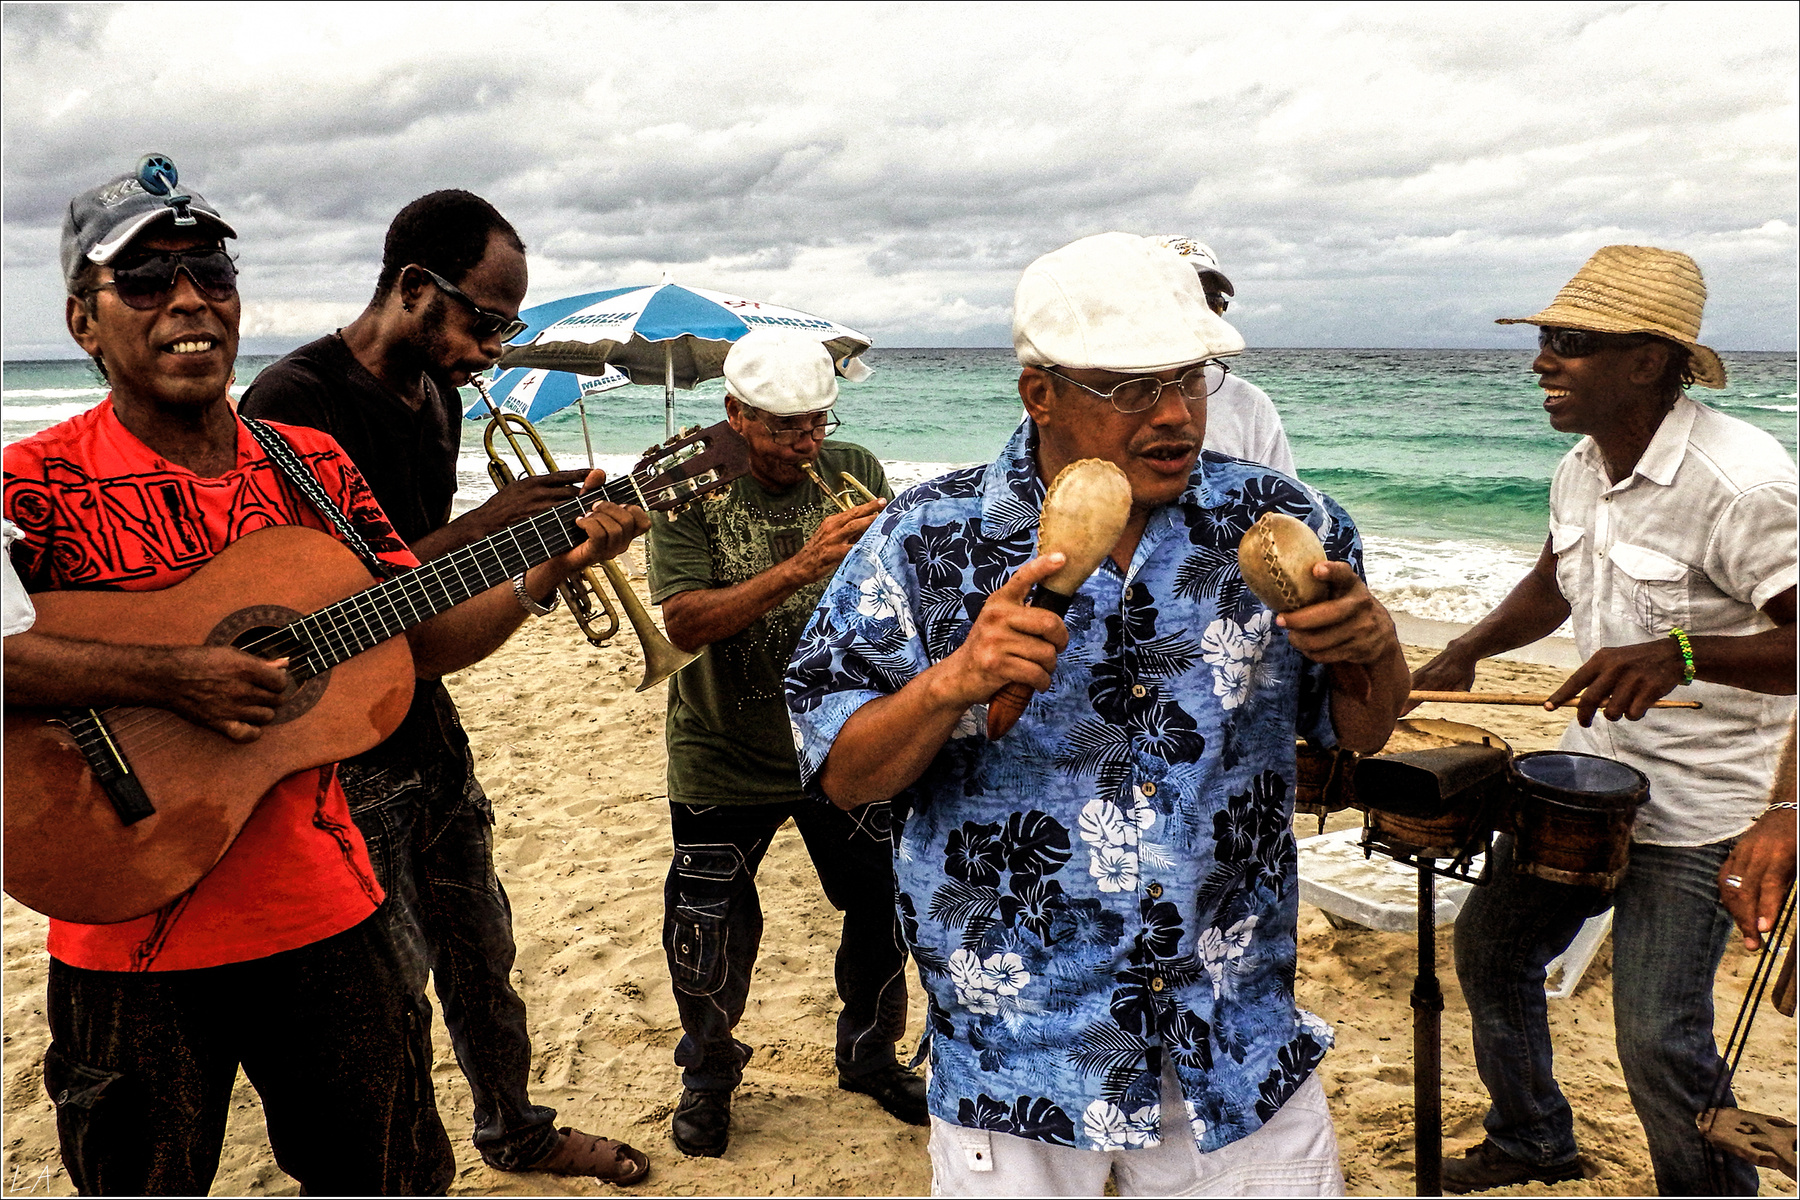 *Пляжный оркестрик на берегу Карибского моря* фотография путешествие Куба Санта Мария пляж море осень оркестр музыканты жанр Фото.Сайт Светлана Мамакина Lihgra Adventure